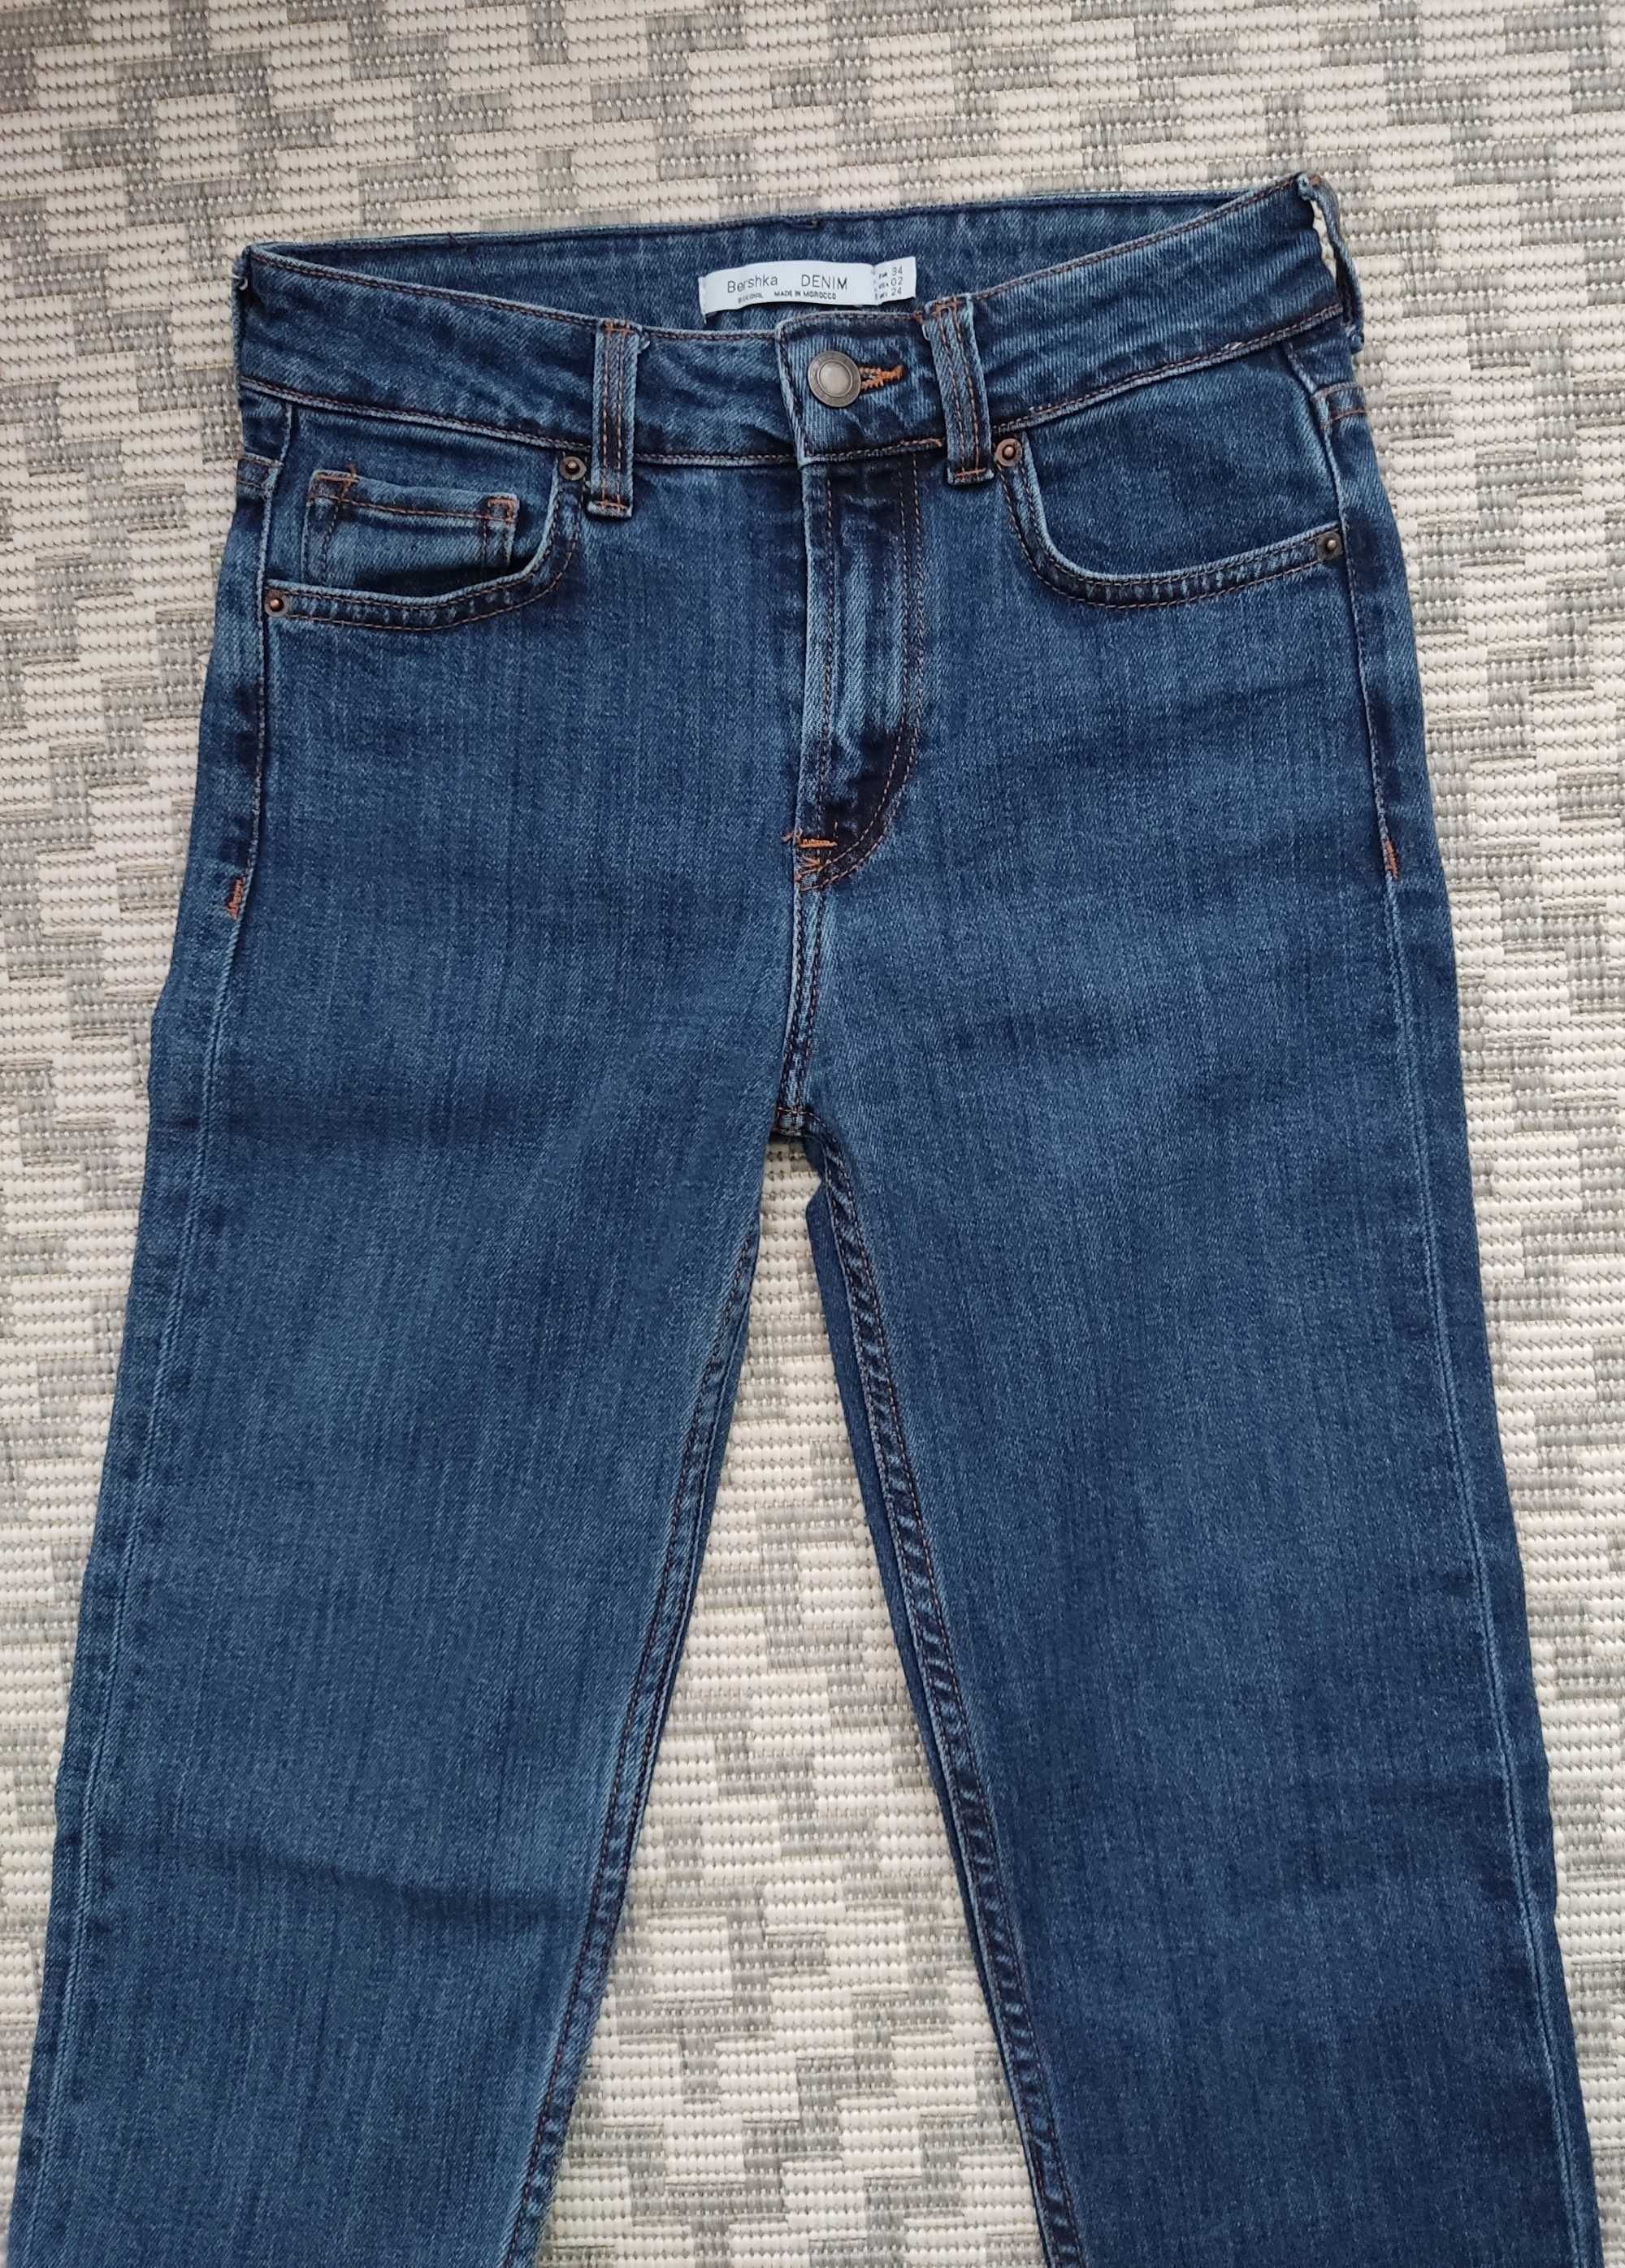 Spodnie damskie jeansowe Jeansy Bershka prosta nogawka Denim Rurki